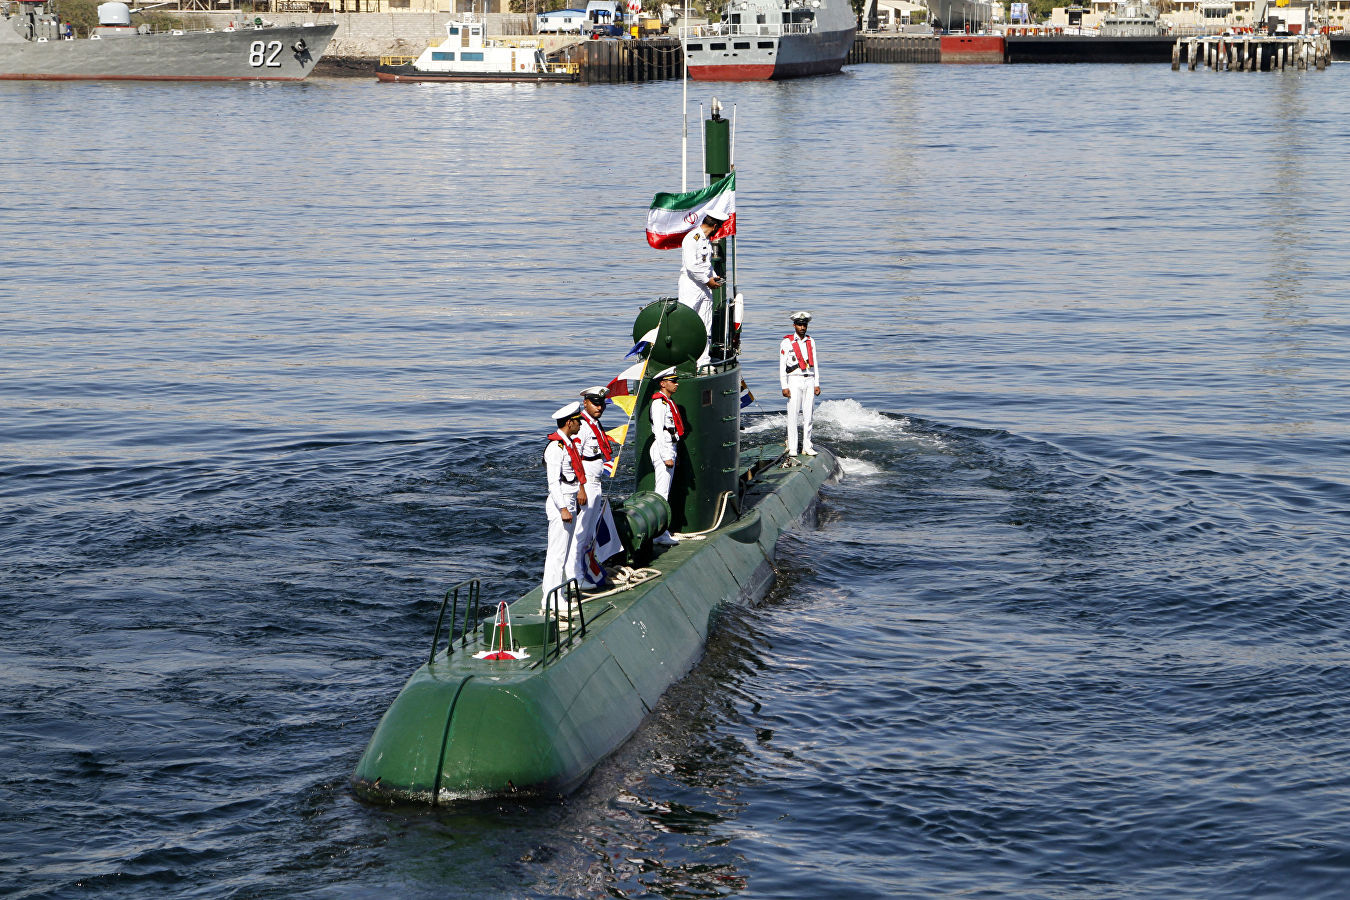 نیروی دریایی ایران